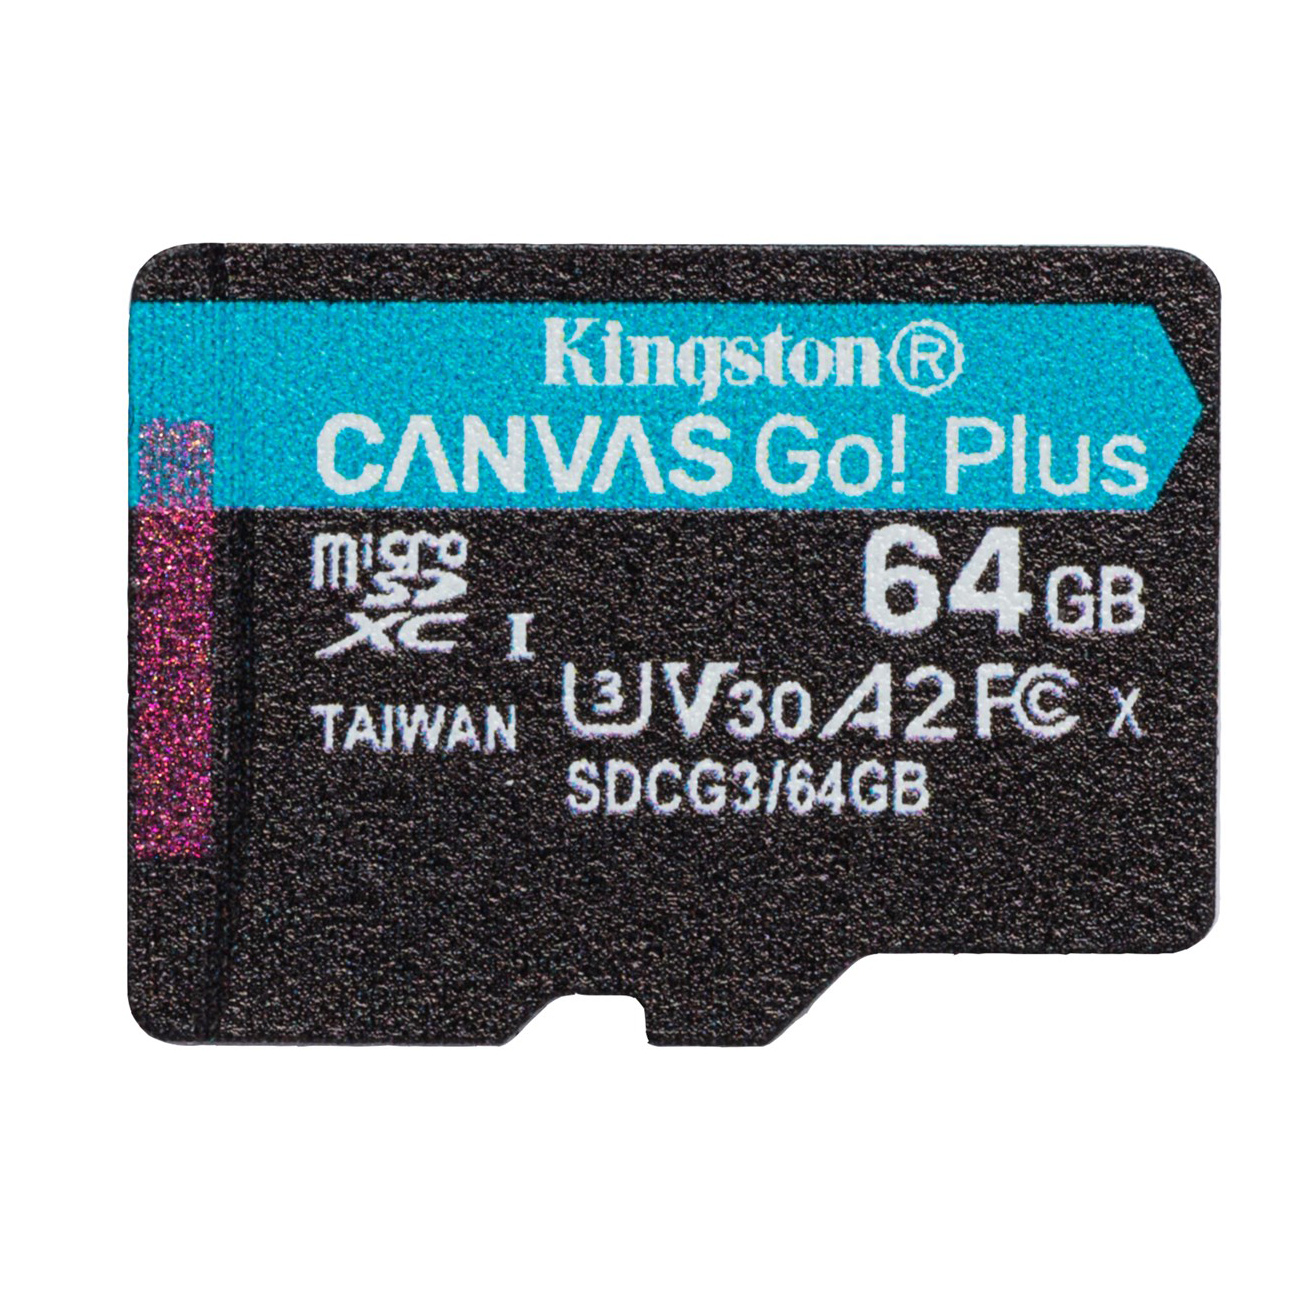 Kingston microSDXC, Canvas Go Plus, 64GB